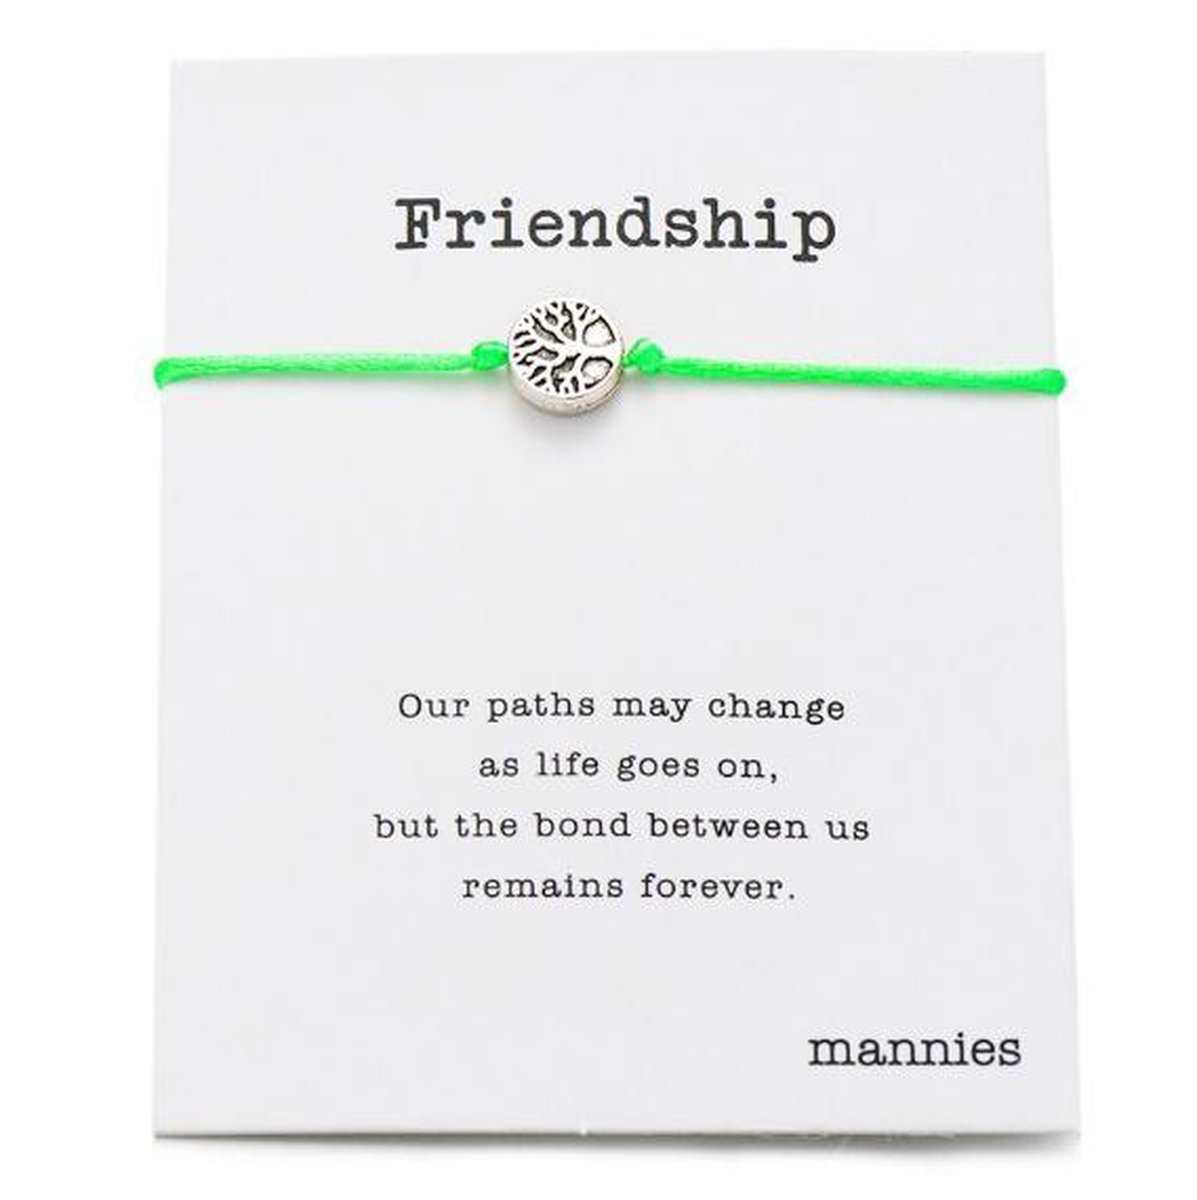 Mannies vriendschapsarmband / wens armband- 2 stuks – inclusief mooie boodschap - Één voor jou, één voor je vriend(in) - Friendship - Licht groen